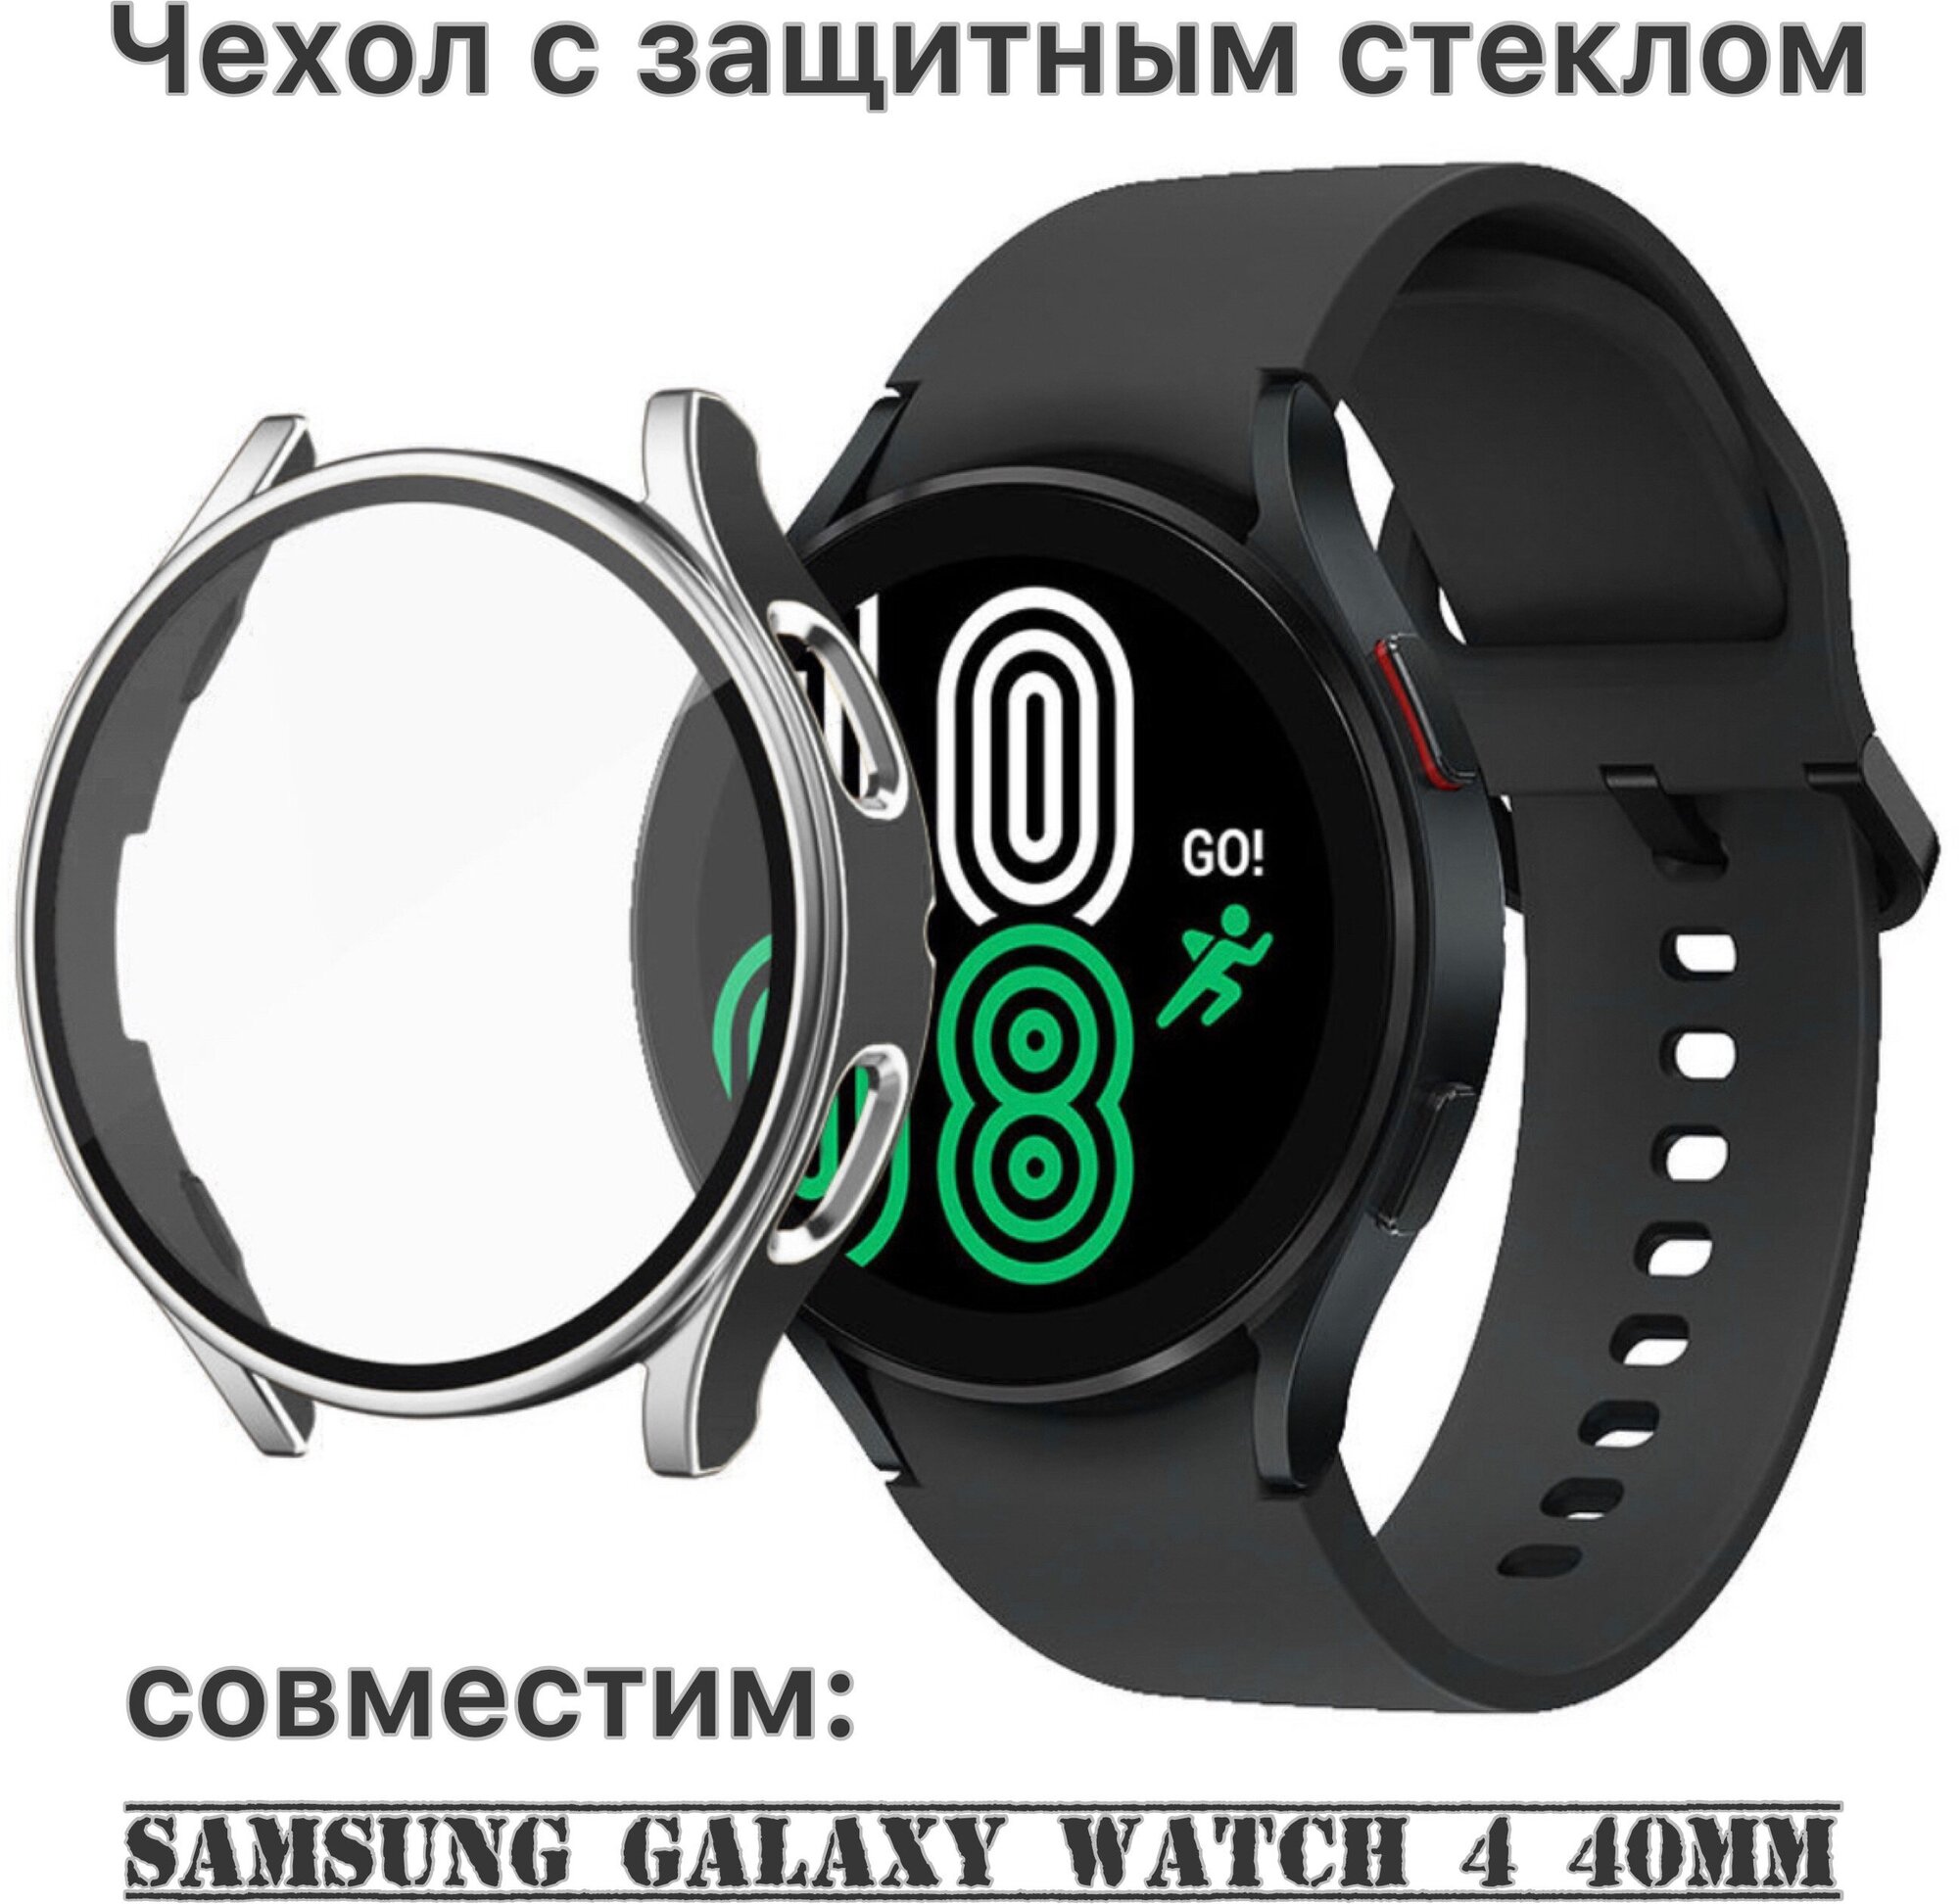 Защитный чехол со стеклом для Samsung Galaxy Watch 4 (40 mm)